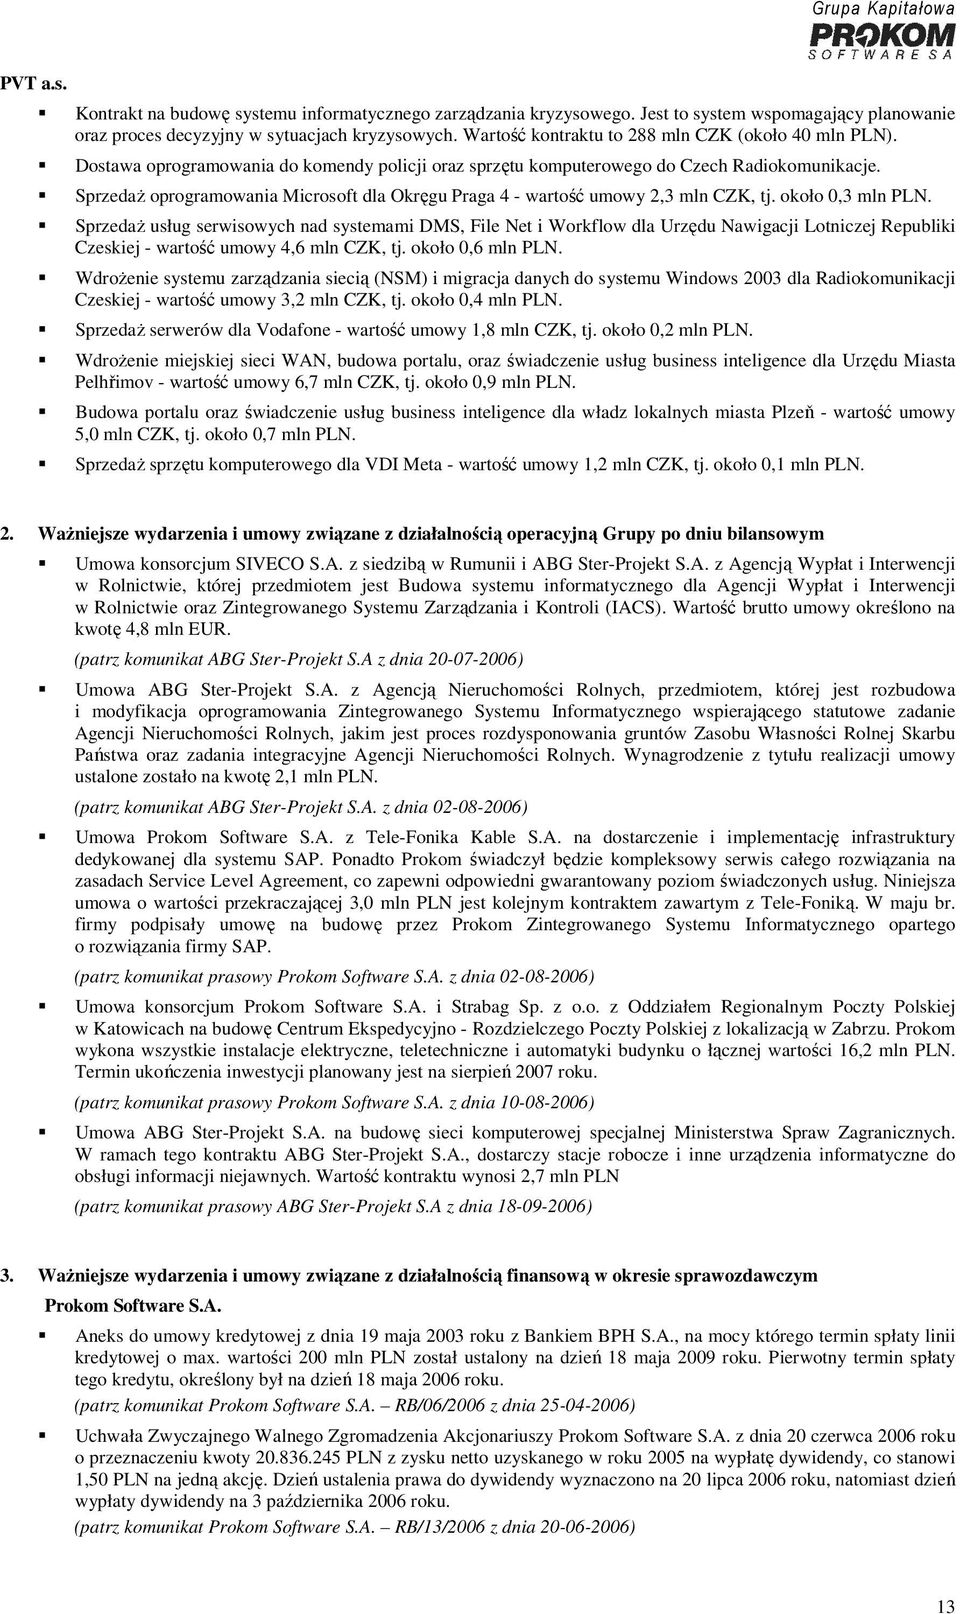 Sprzedaż oprogramowania Microsoft dla Okręgu Praga 4 - wartość umowy 2,3 mln CZK, tj. około 0,3 mln PLN.